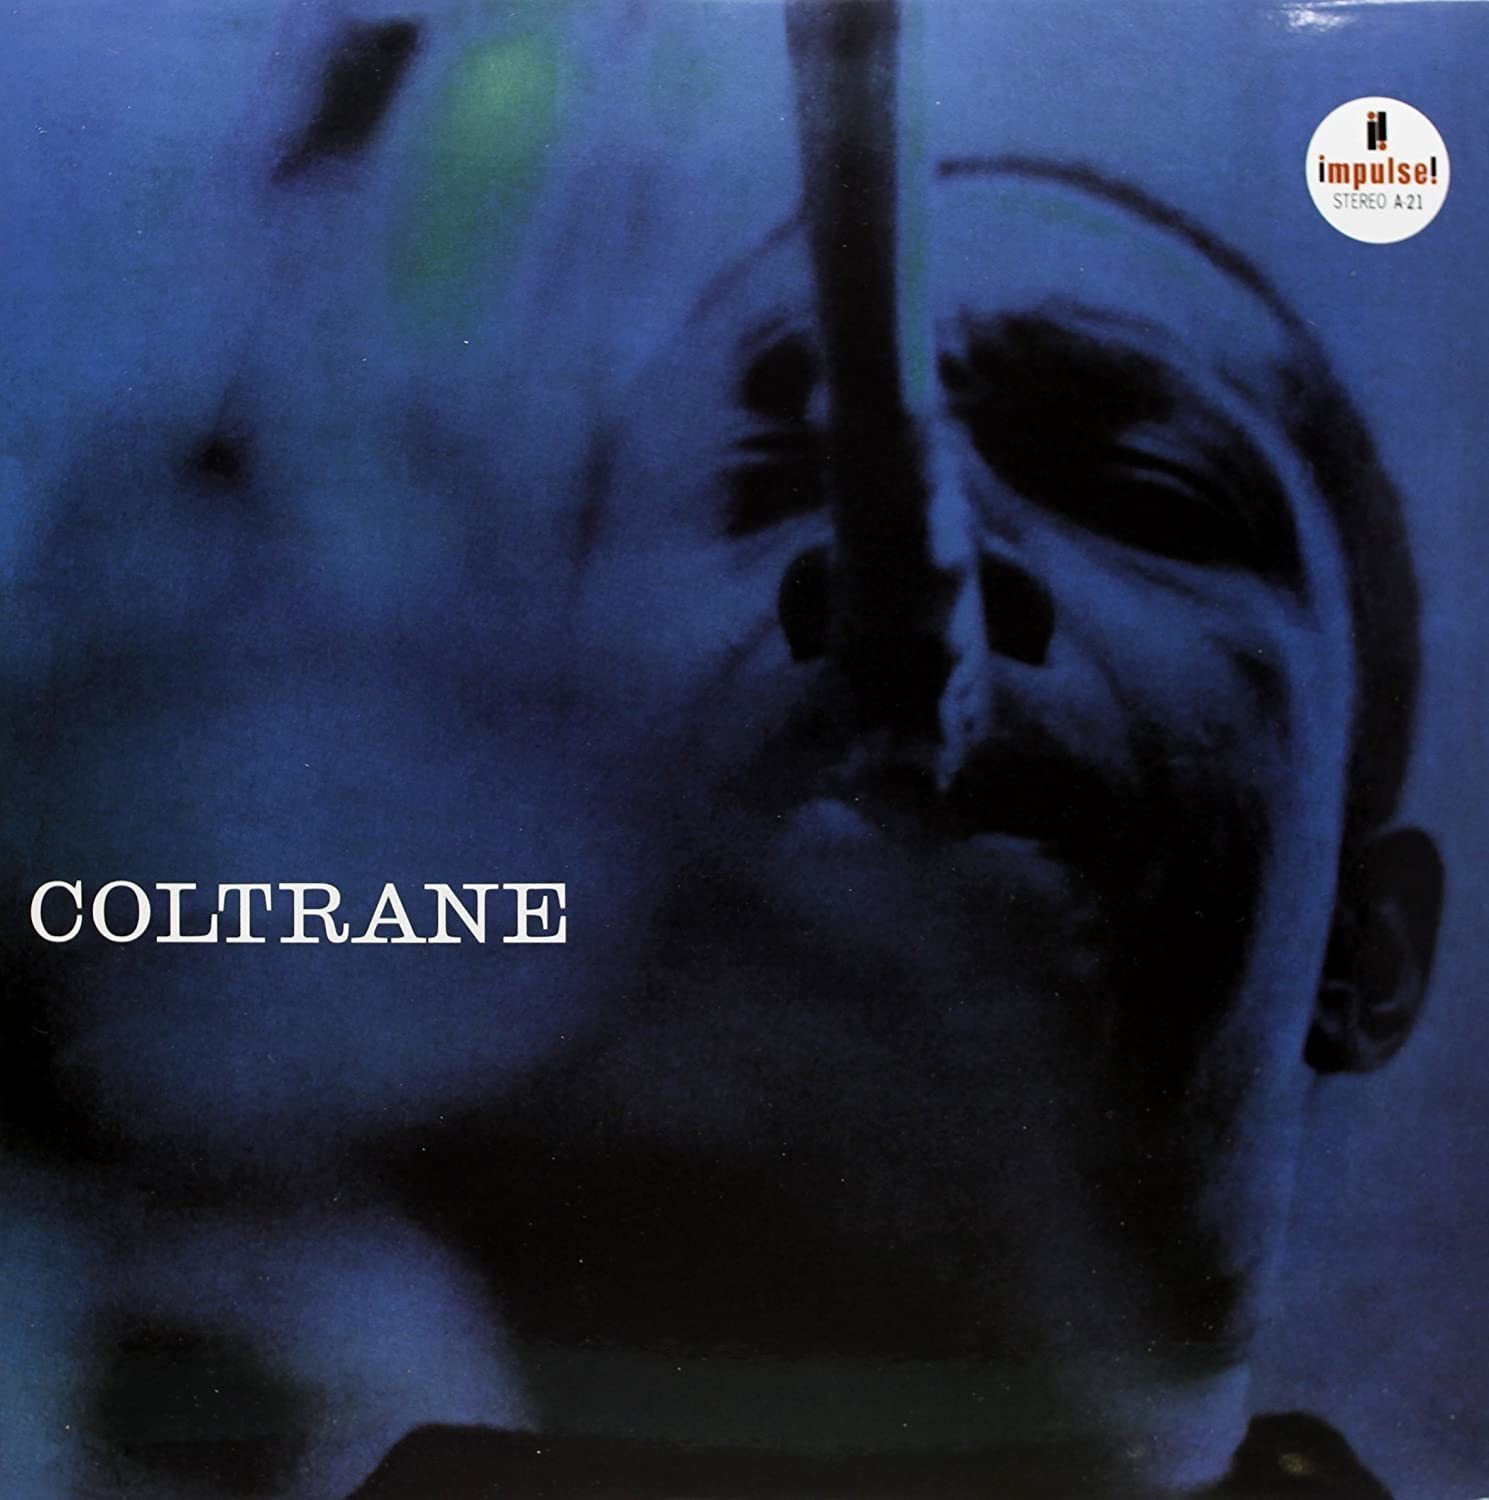 Vinyl Record John Coltrane - Coltrane (2 LP)